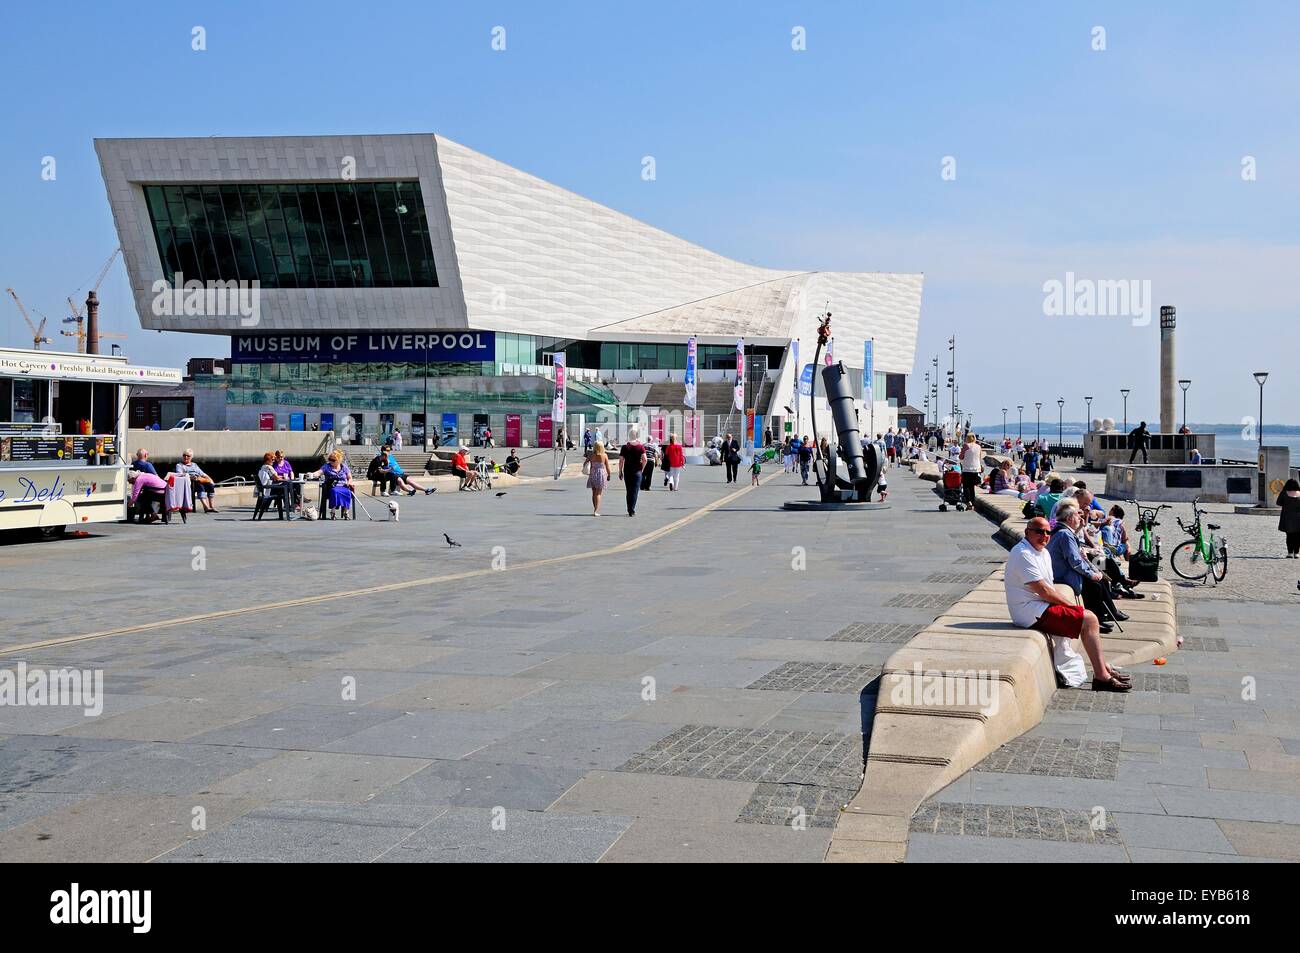 Le Ferry Building à Pier Head avec les touristes découvrir les sites, Liverpool, Merseyside, England, UK, Europe de l'Ouest. Banque D'Images